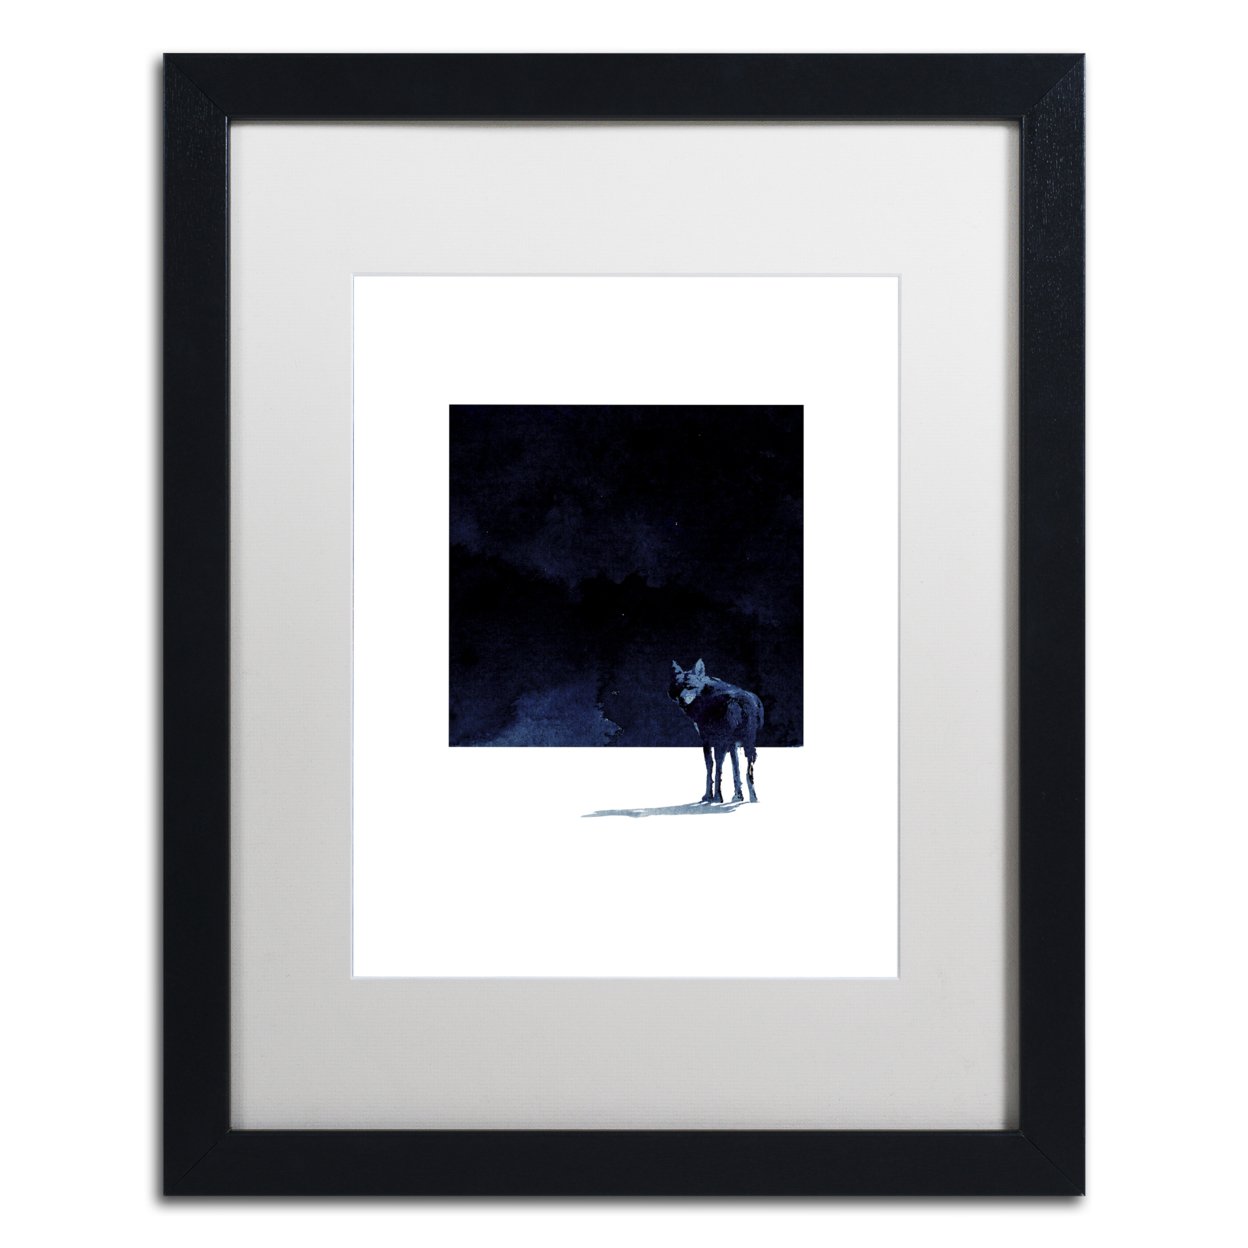 Robert Farkas 'I'm Going Back' Black Wooden Framed Art 18 X 22 Inches